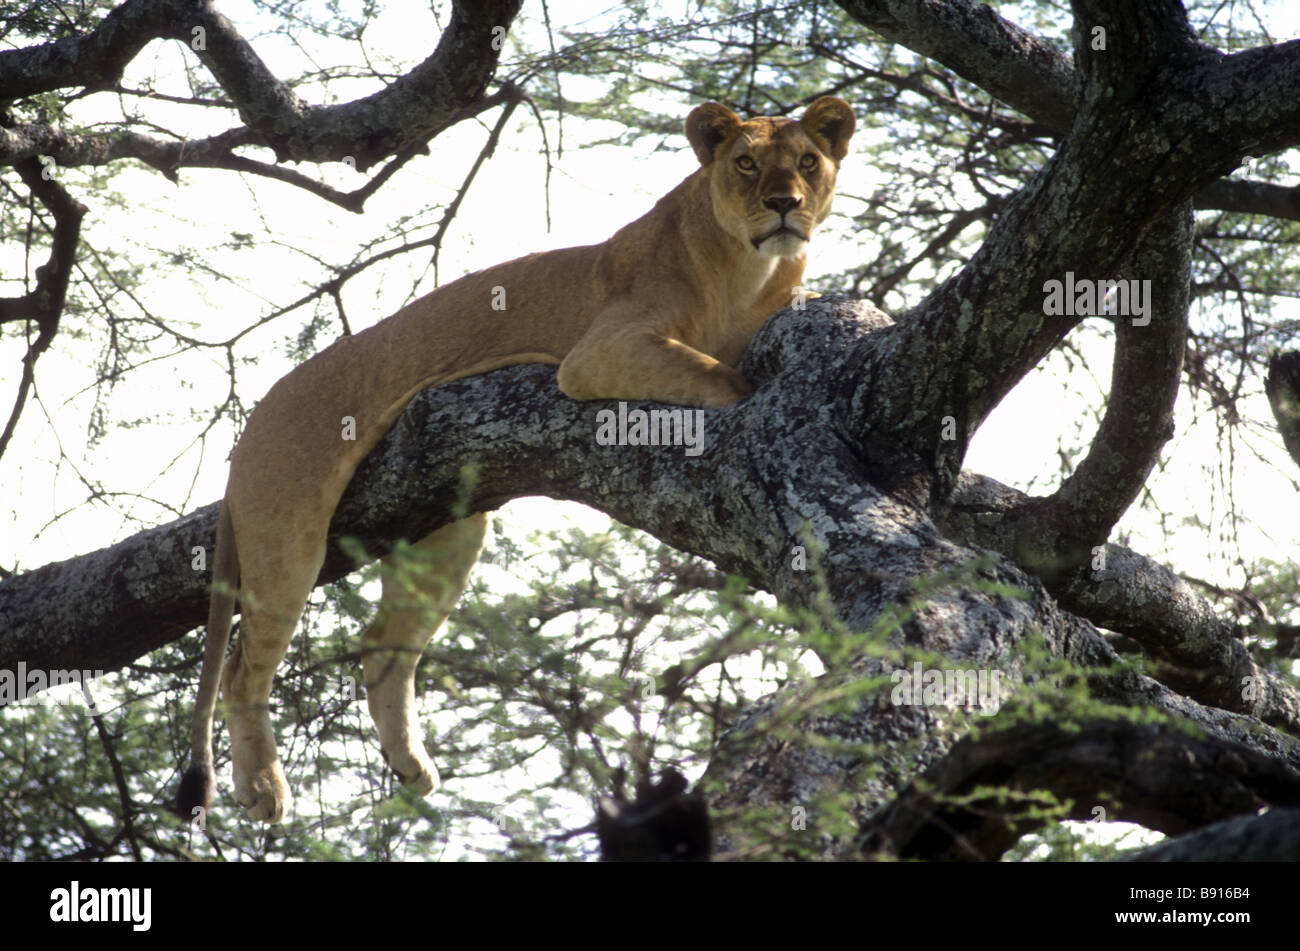 Repos lionne élevée dans les branches d'un acacia Parc National de Serengeti Tanzanie Afrique de l'Est Banque D'Images